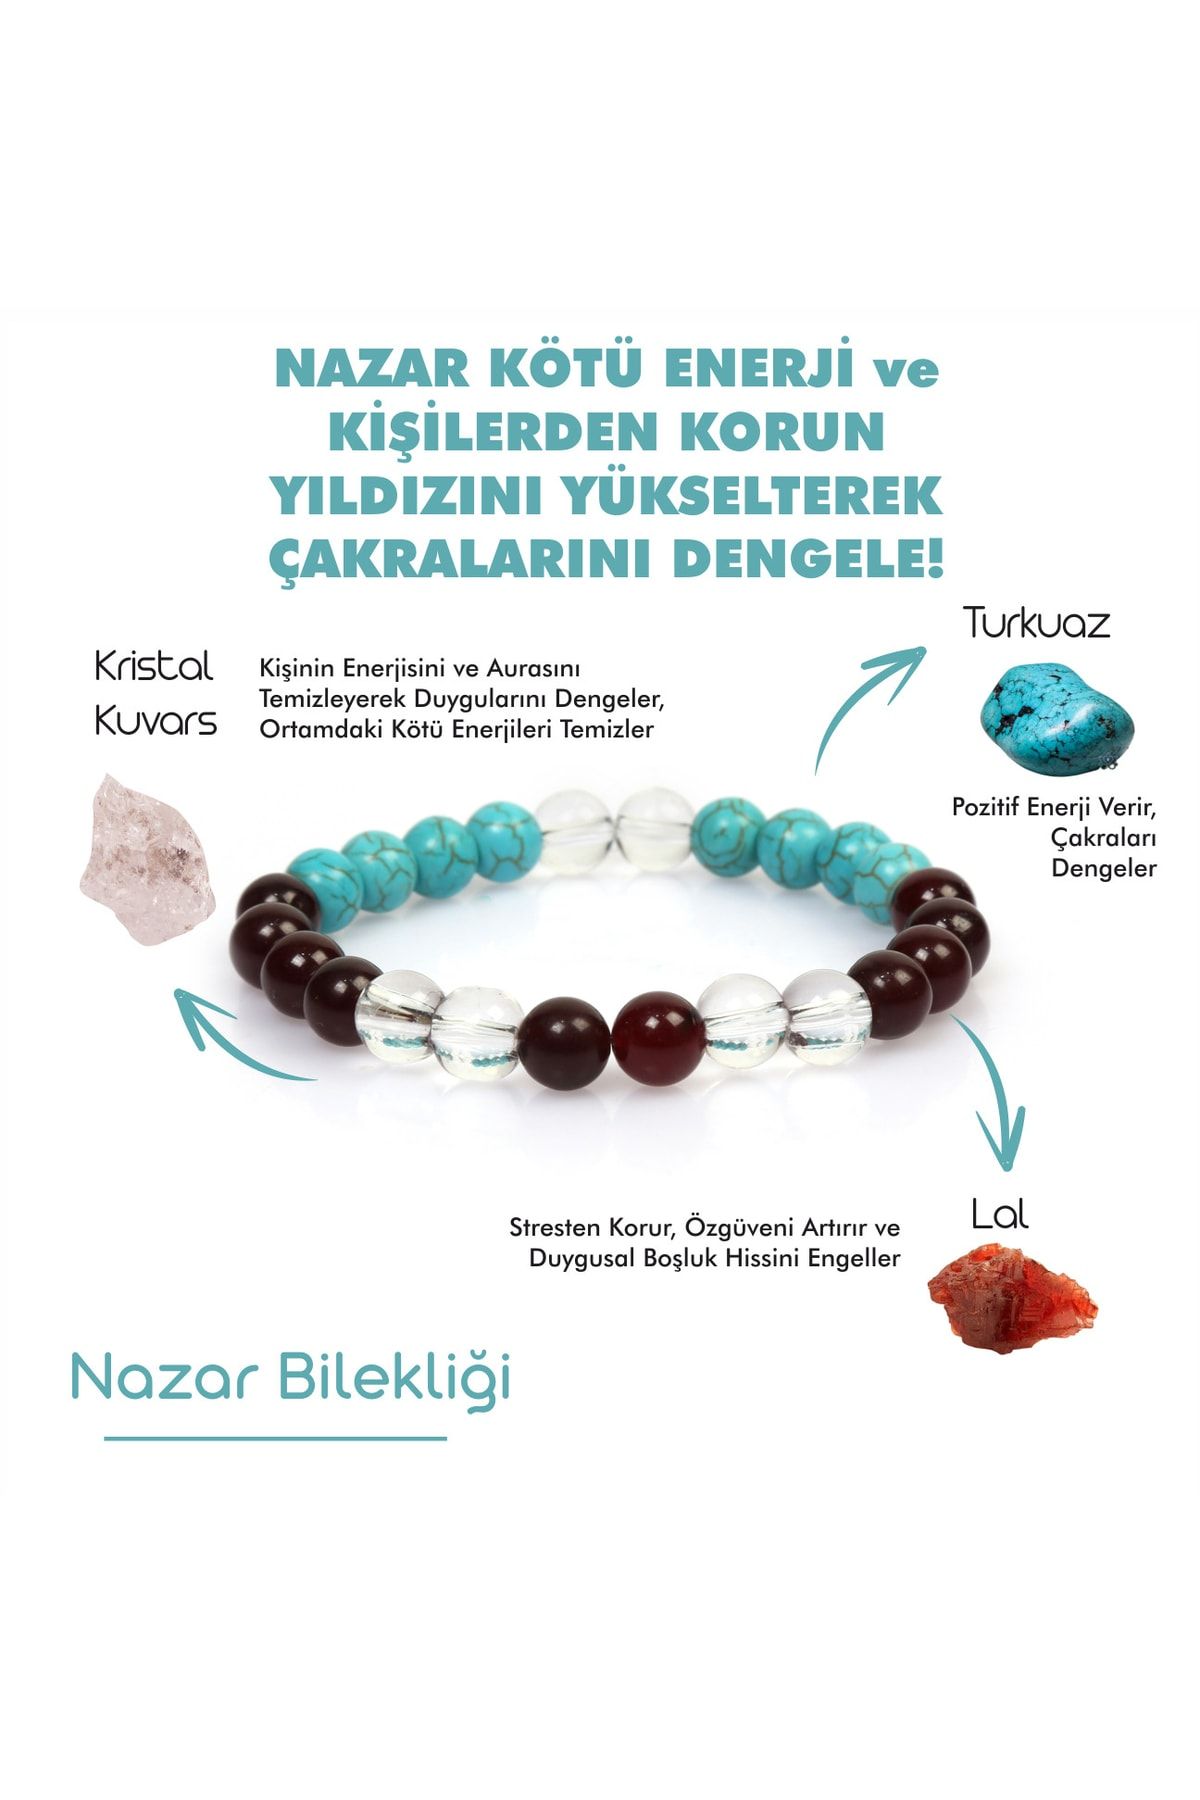 Mystic Energy Sertifikalı Doğal Taş Nazar Tılsım Bilekliği|lal(GRANAT)-turkuaz-kristal Kuvars |hediyelik Doğaltaş